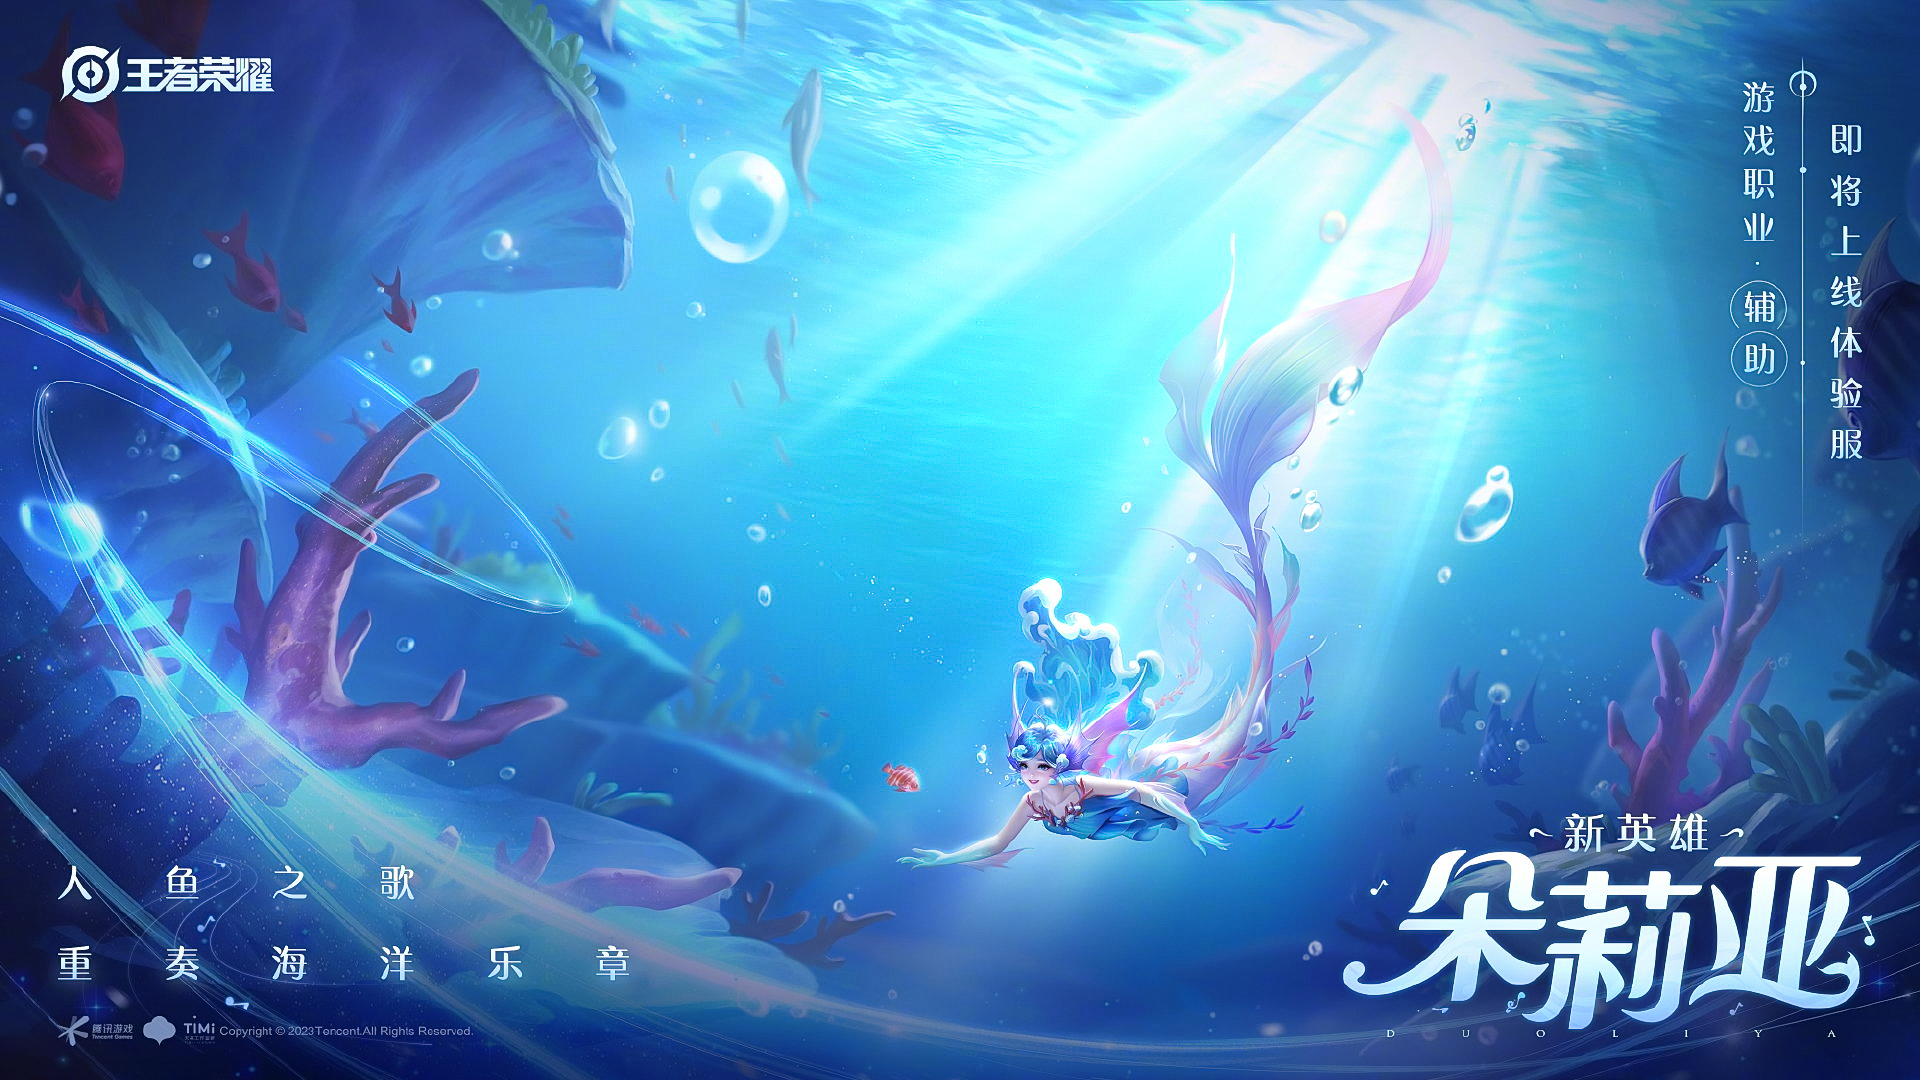 《王者荣耀》新英雄“美人鱼”朵莉亚高清壁纸：长发蓝裙绝美 - 哔哩哔哩